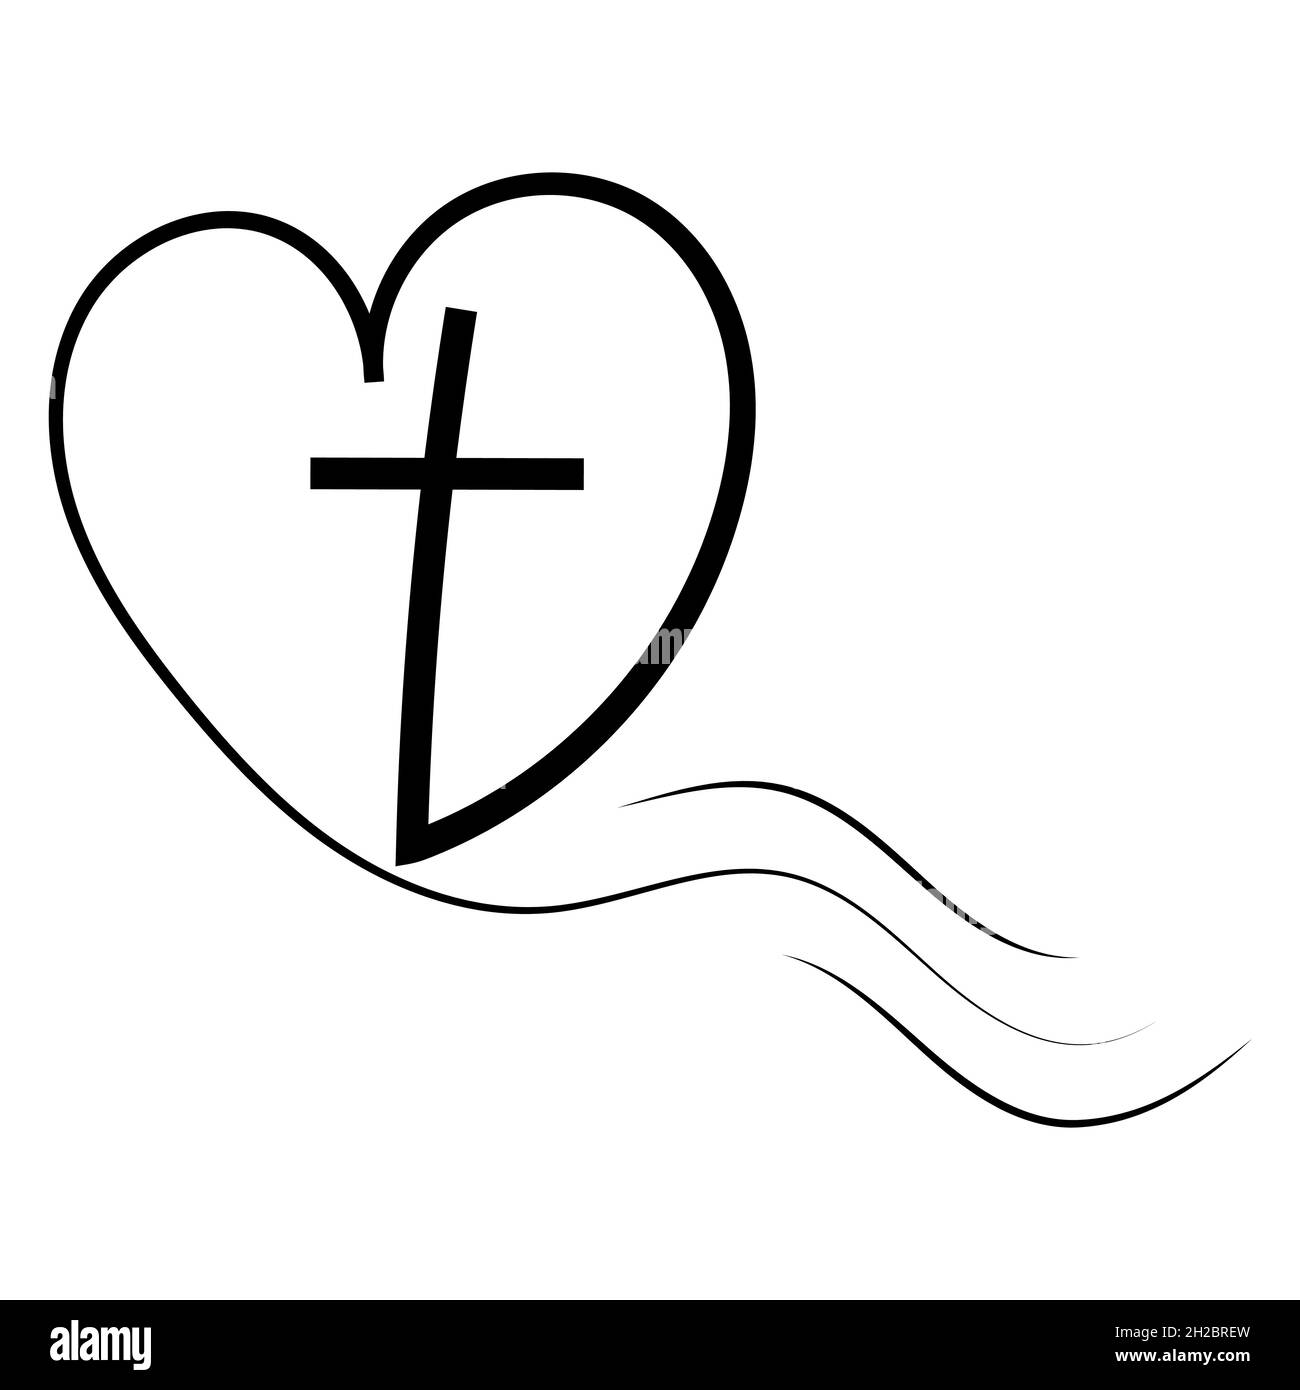 Modèle de logo pour les églises amour pour Dieu croix dans le coeur.Illustration de la croix de calligraphie religieuse et du coeur Illustration de Vecteur